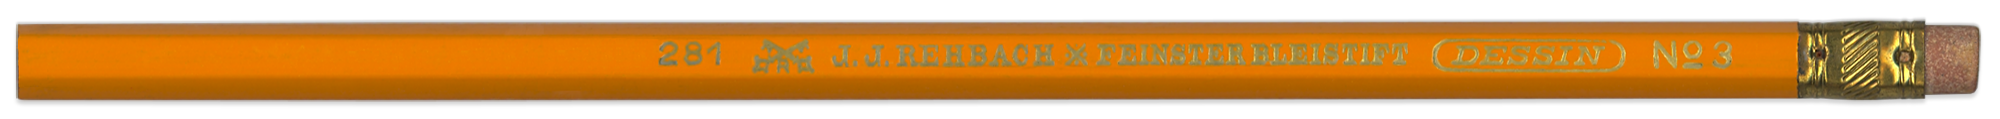 rehbach_281